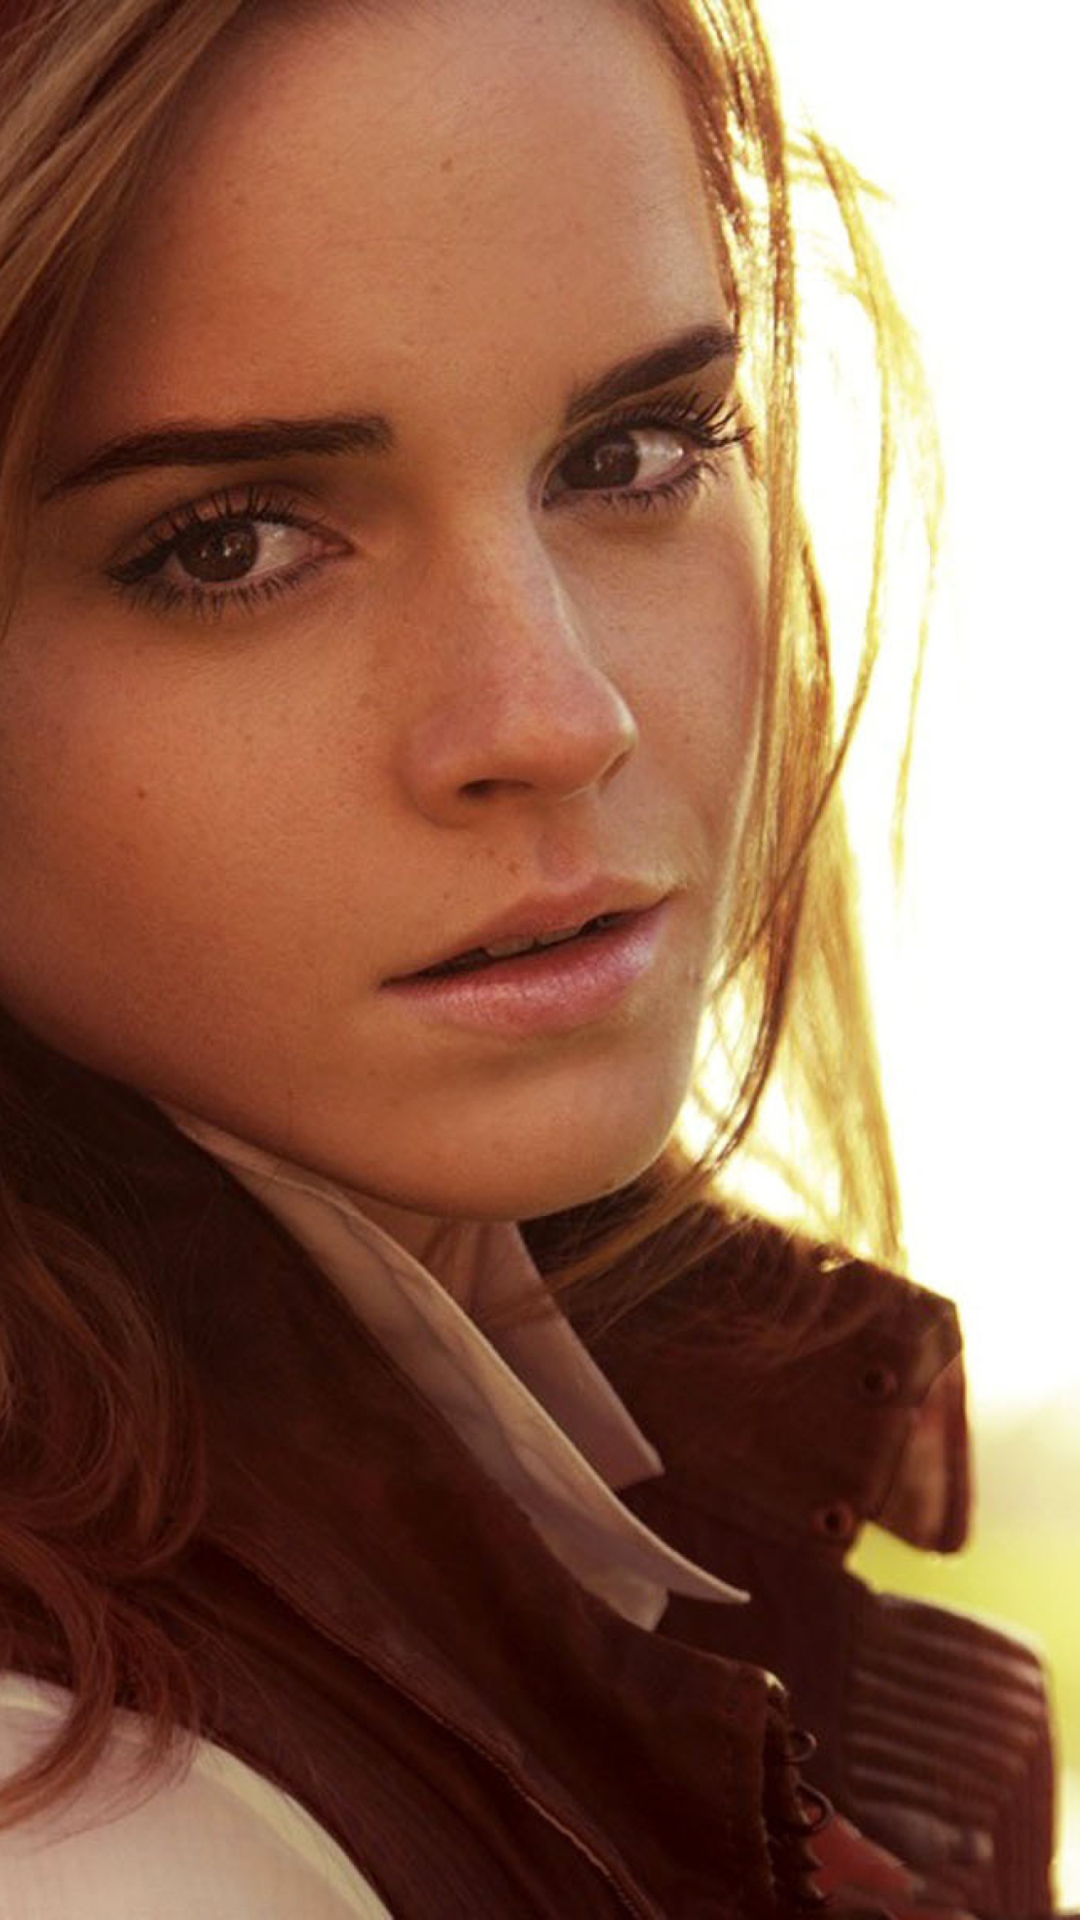 Cute Emma Watson wallpaper 1080x1920